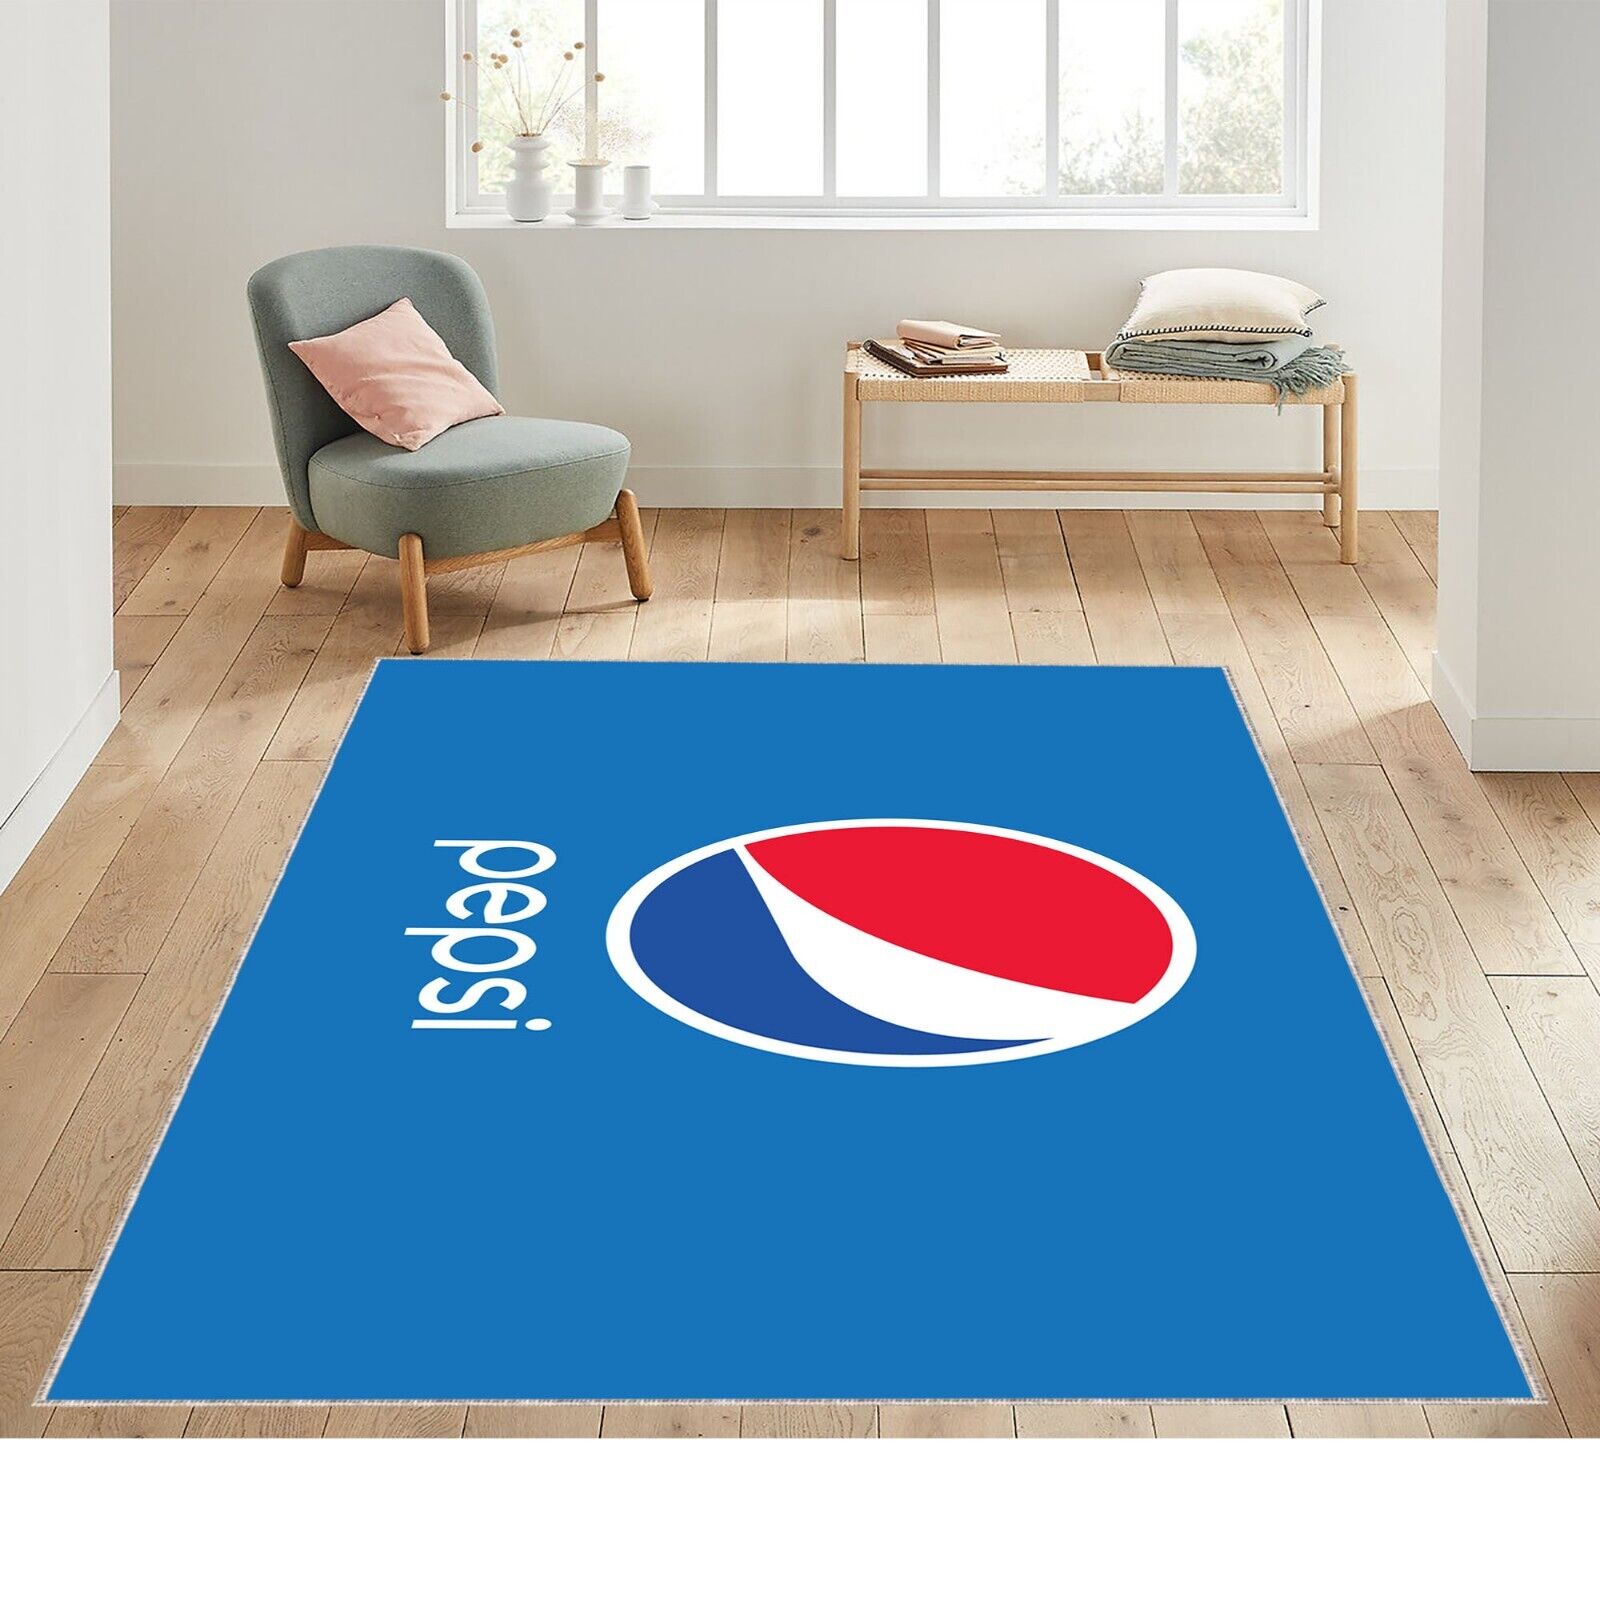 Pepsi Cola Rug, Cola, Pepsi Illustration On Blue Rug, Pepsi Cola Patterned Rug